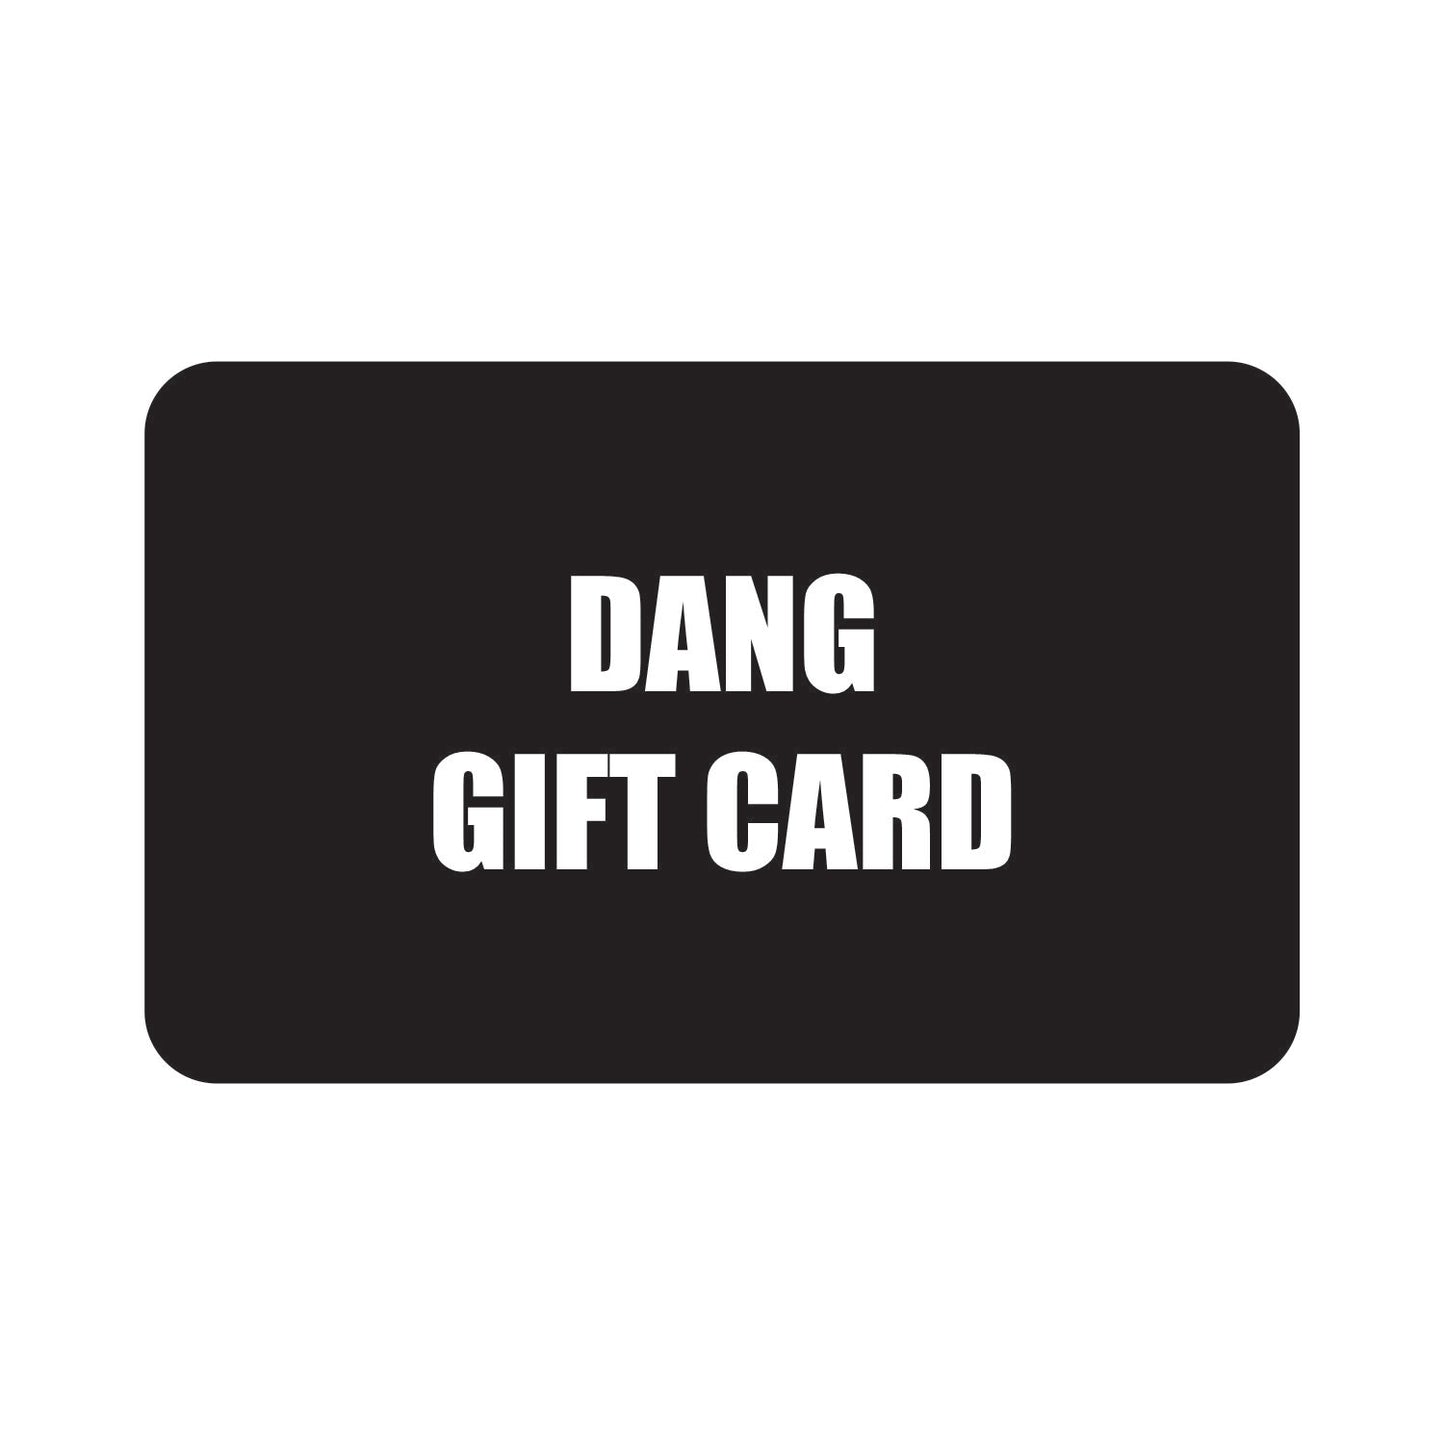 DANG GIFT CARD